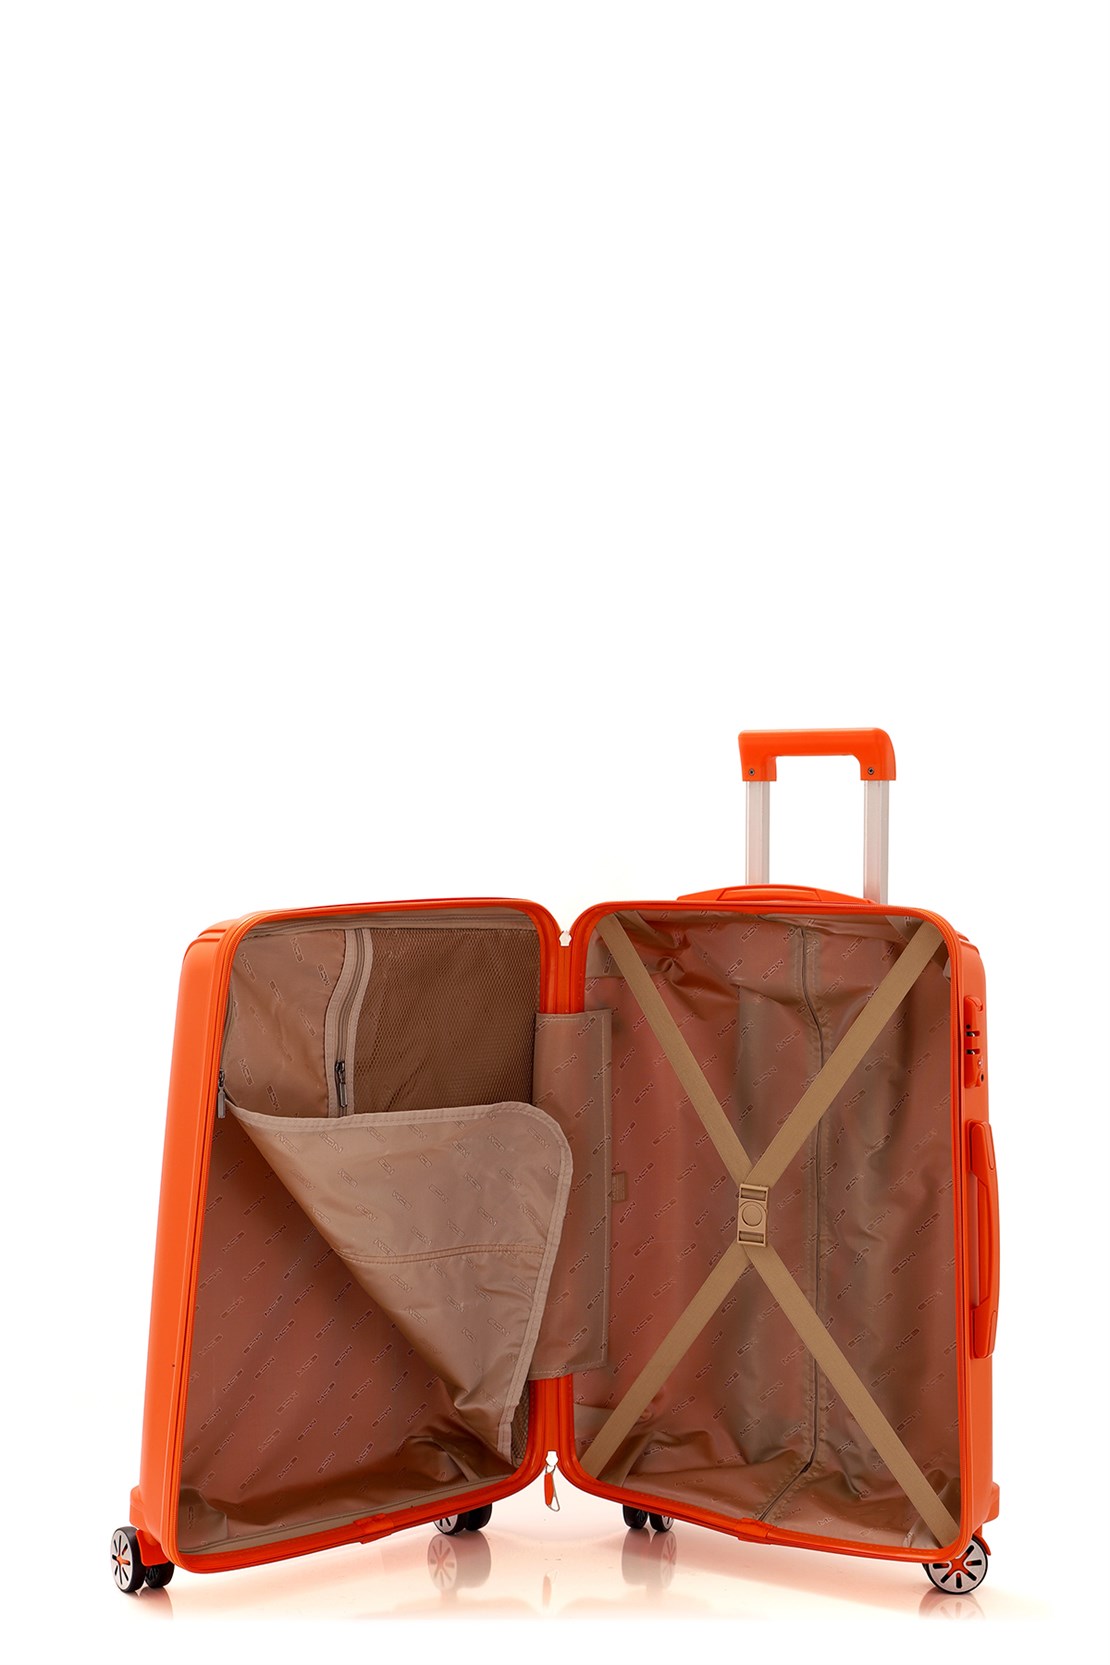 Маленький чемодан для ручьной клади из полипропилена MCS V305 S ORANGE! Для 8-10 кг! - 2